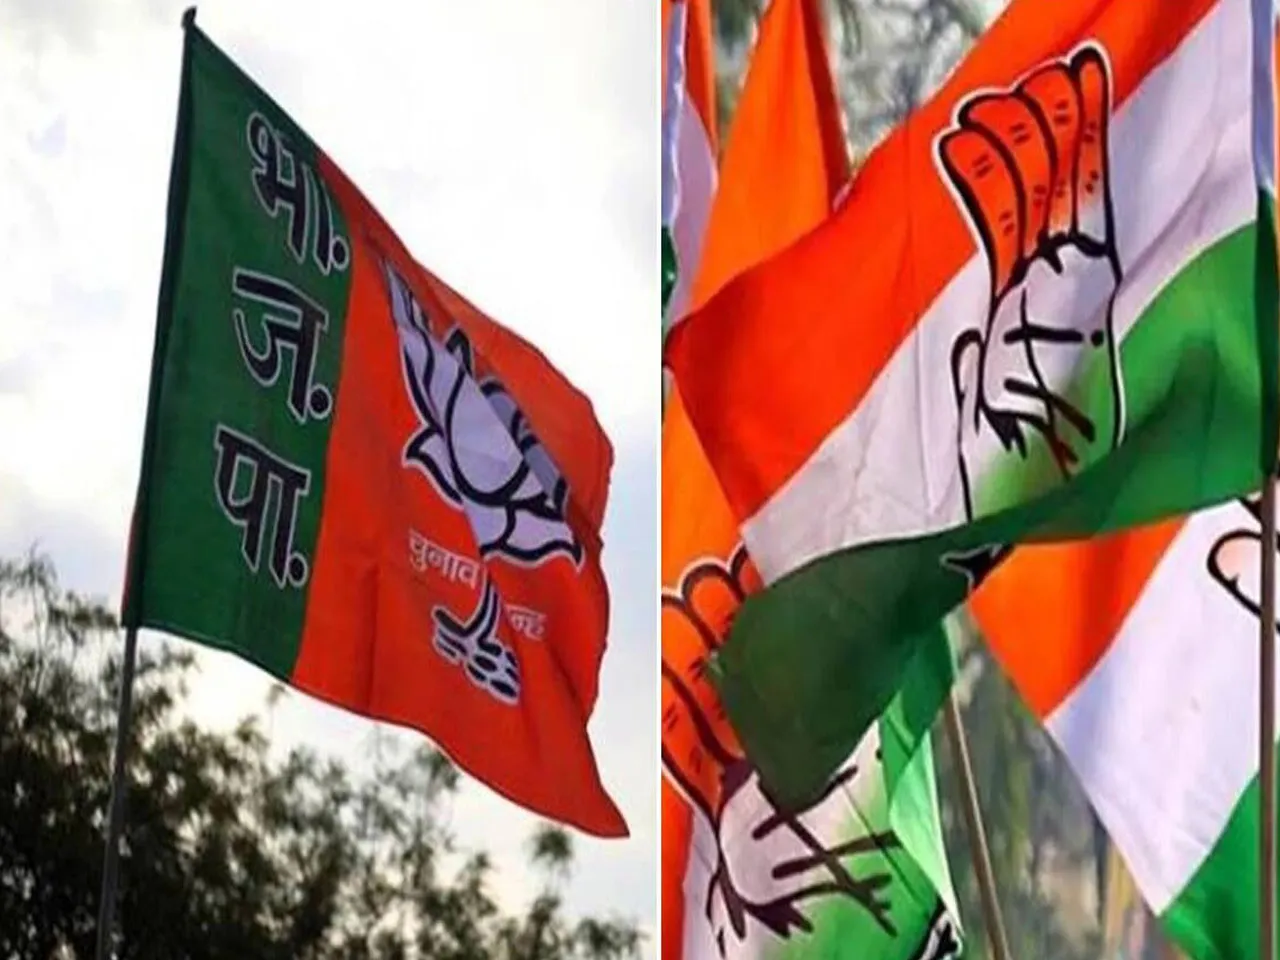 কয়লা, ২জি, হেলিকপ্টার সহ একাধিক দুর্নীতি করেছে কংগ্রেস, দাবি BJP-র